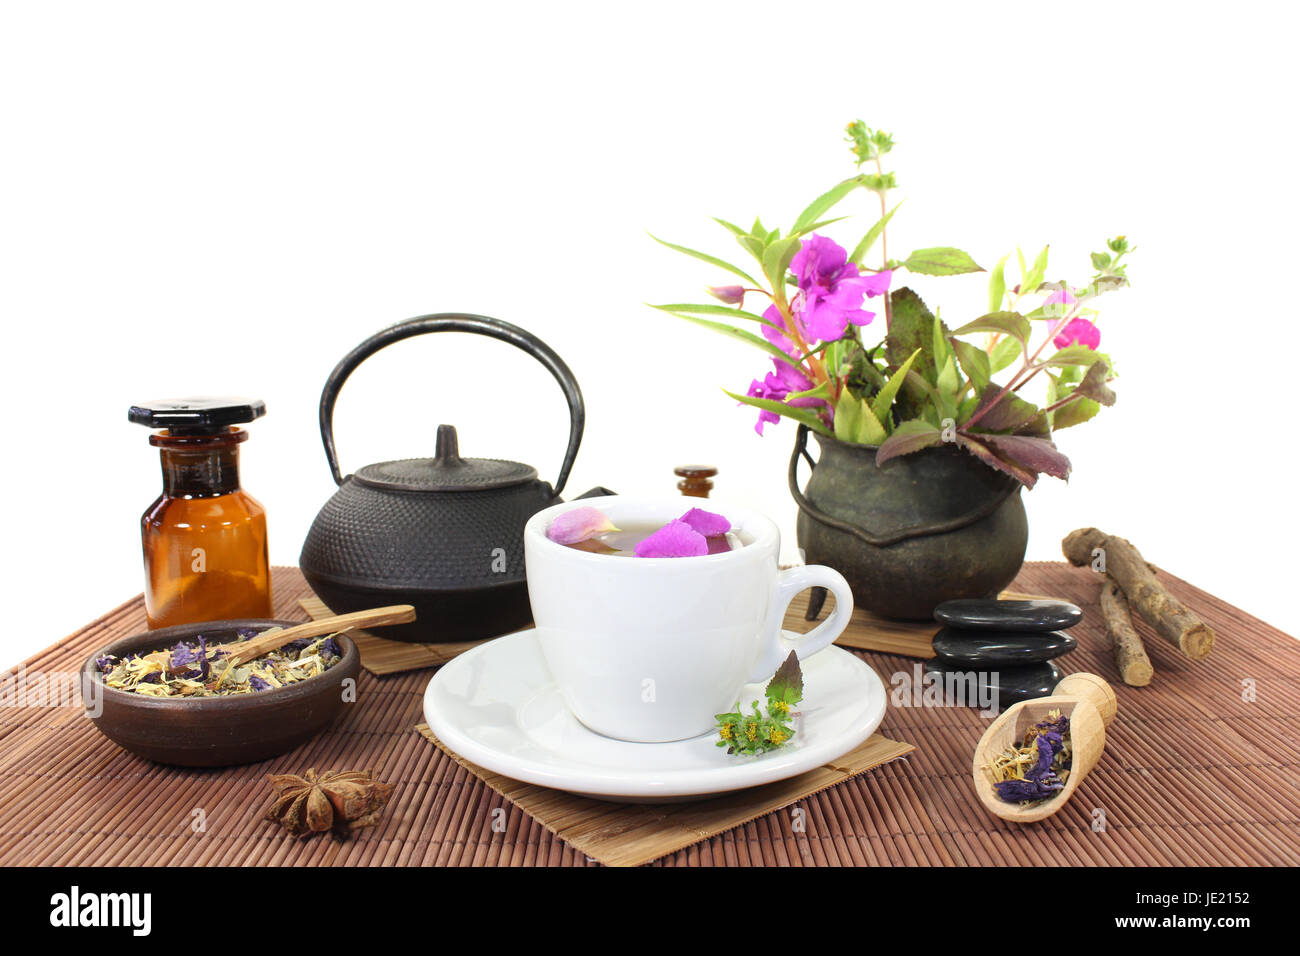 Chinesische Naturmedizin mit einer Tasse Tee und Blütenblättern sowie Kräuter Foto Stock